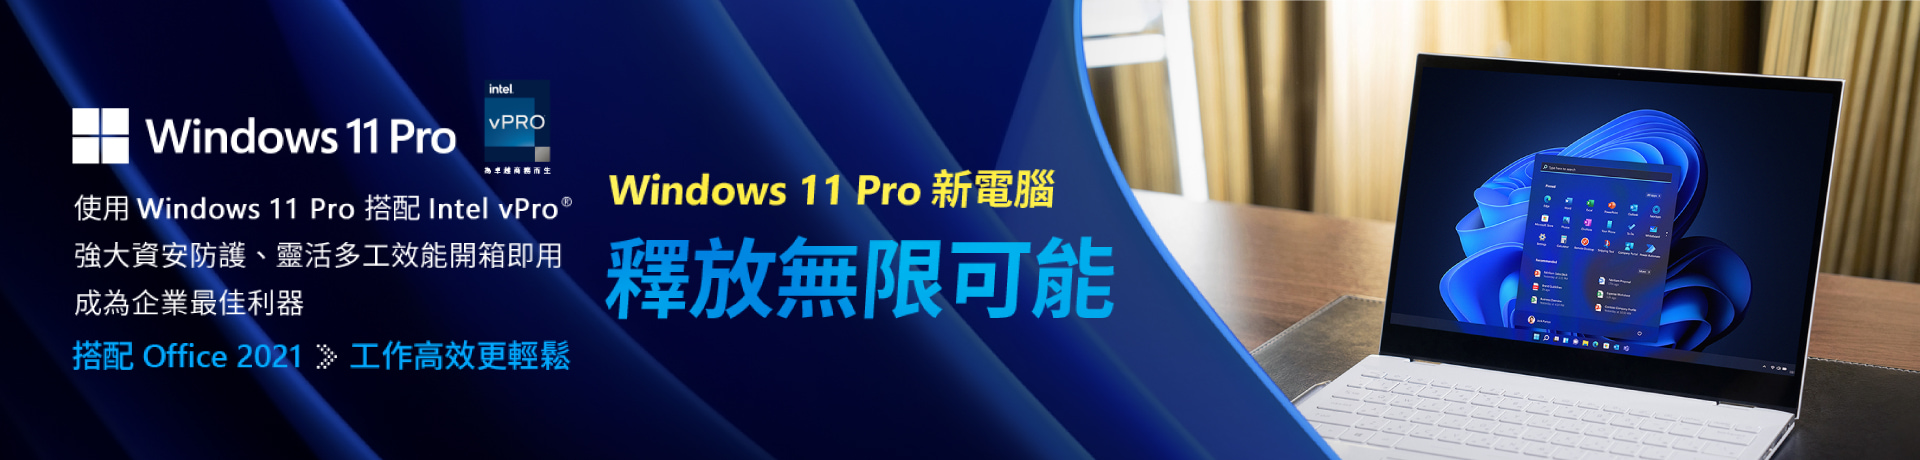 Windows 11 pro 釋放無限可能